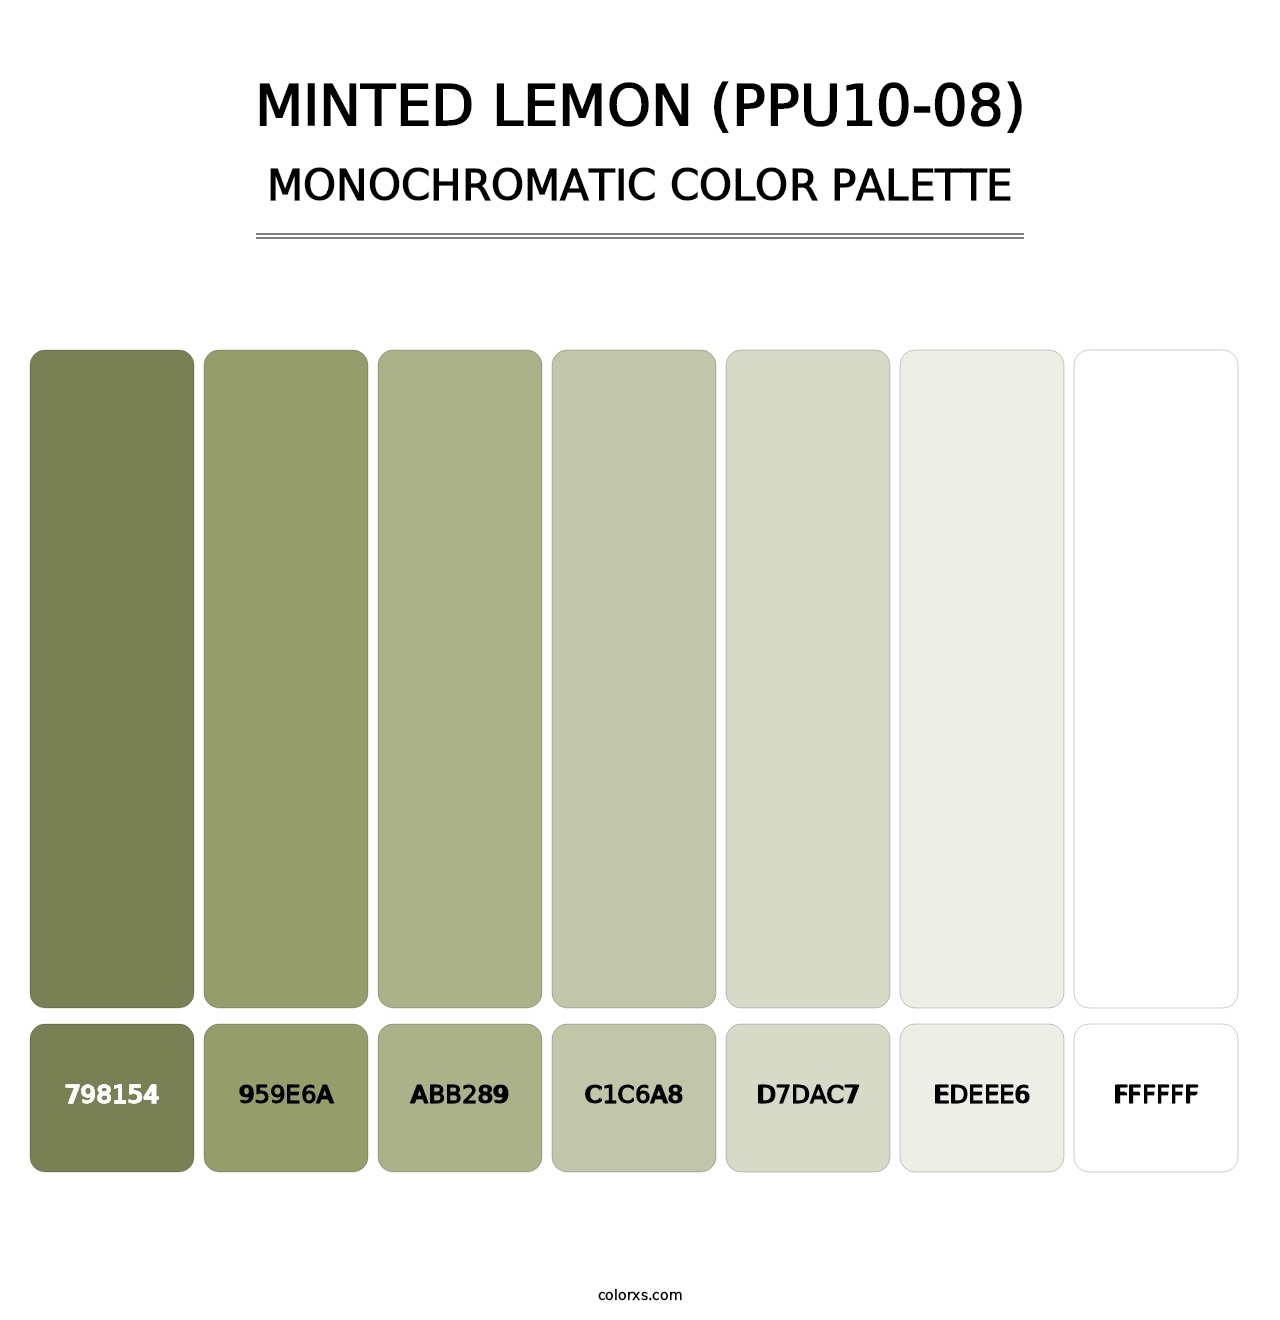 Minted Lemon (PPU10-08) - Monochromatic Color Palette